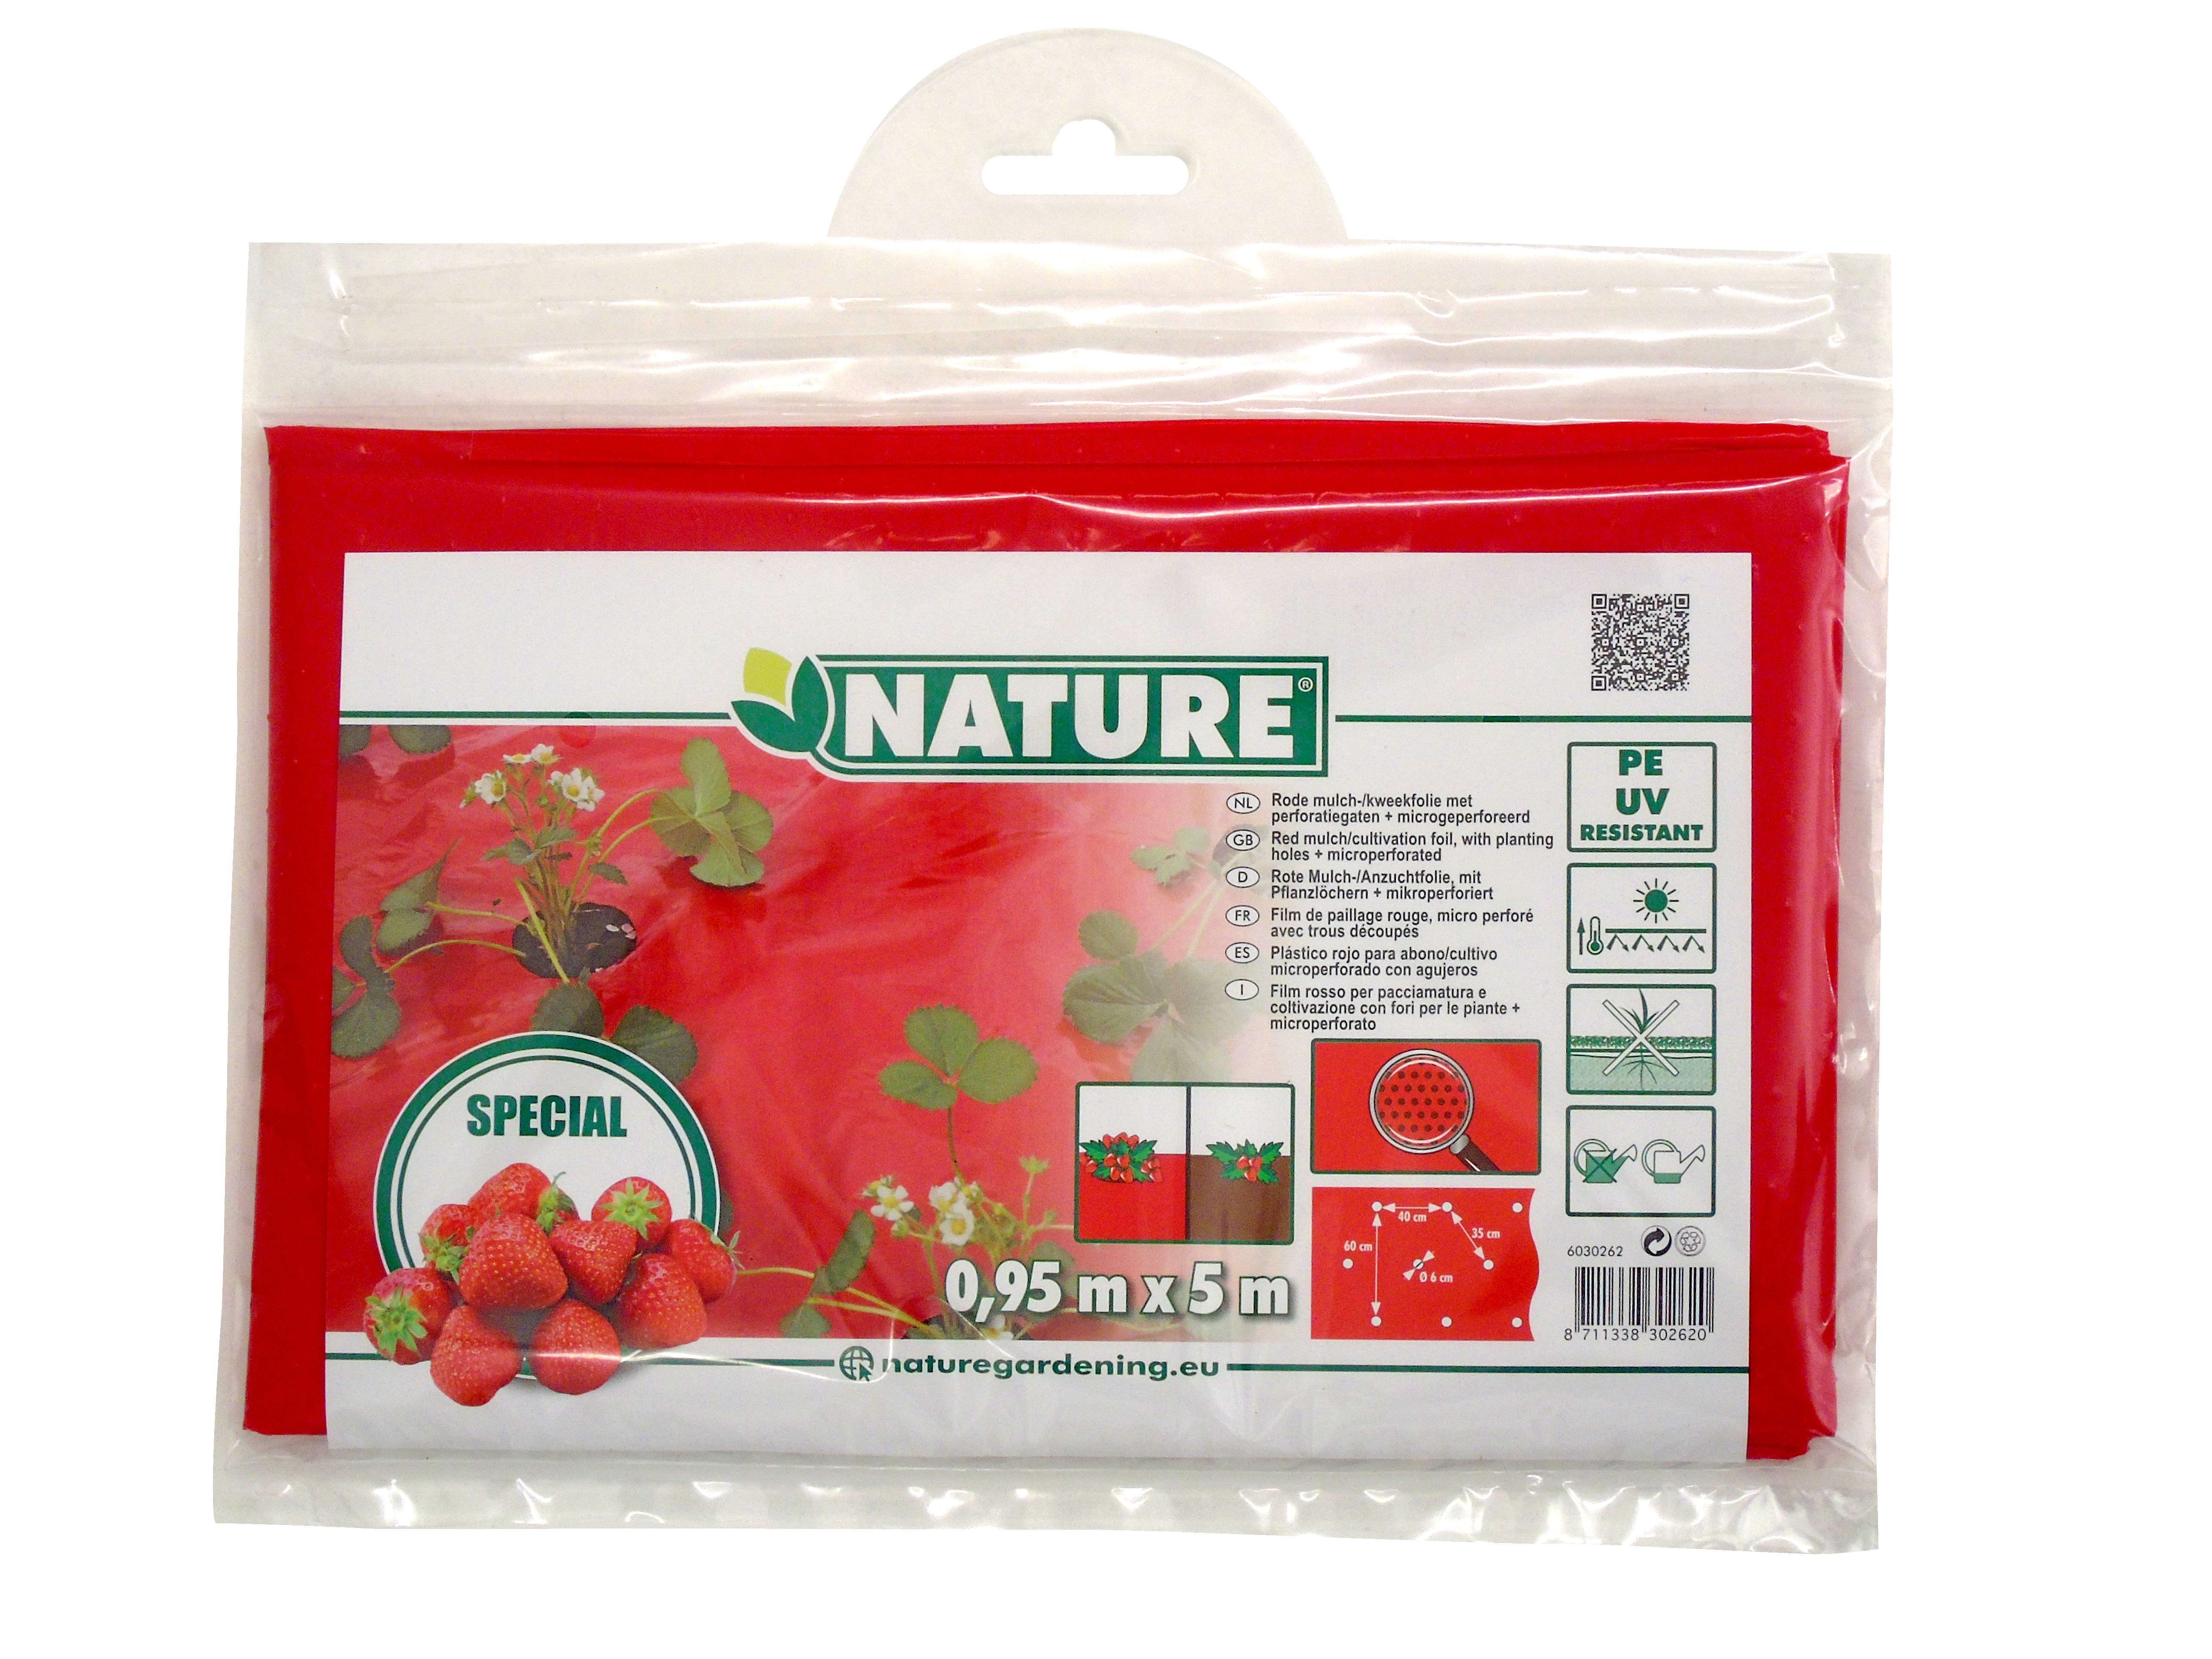 Folie de acoperire pentru căpșuni roșu! 25 micron60x60mm,0,95x5m, cu găuri de plantare